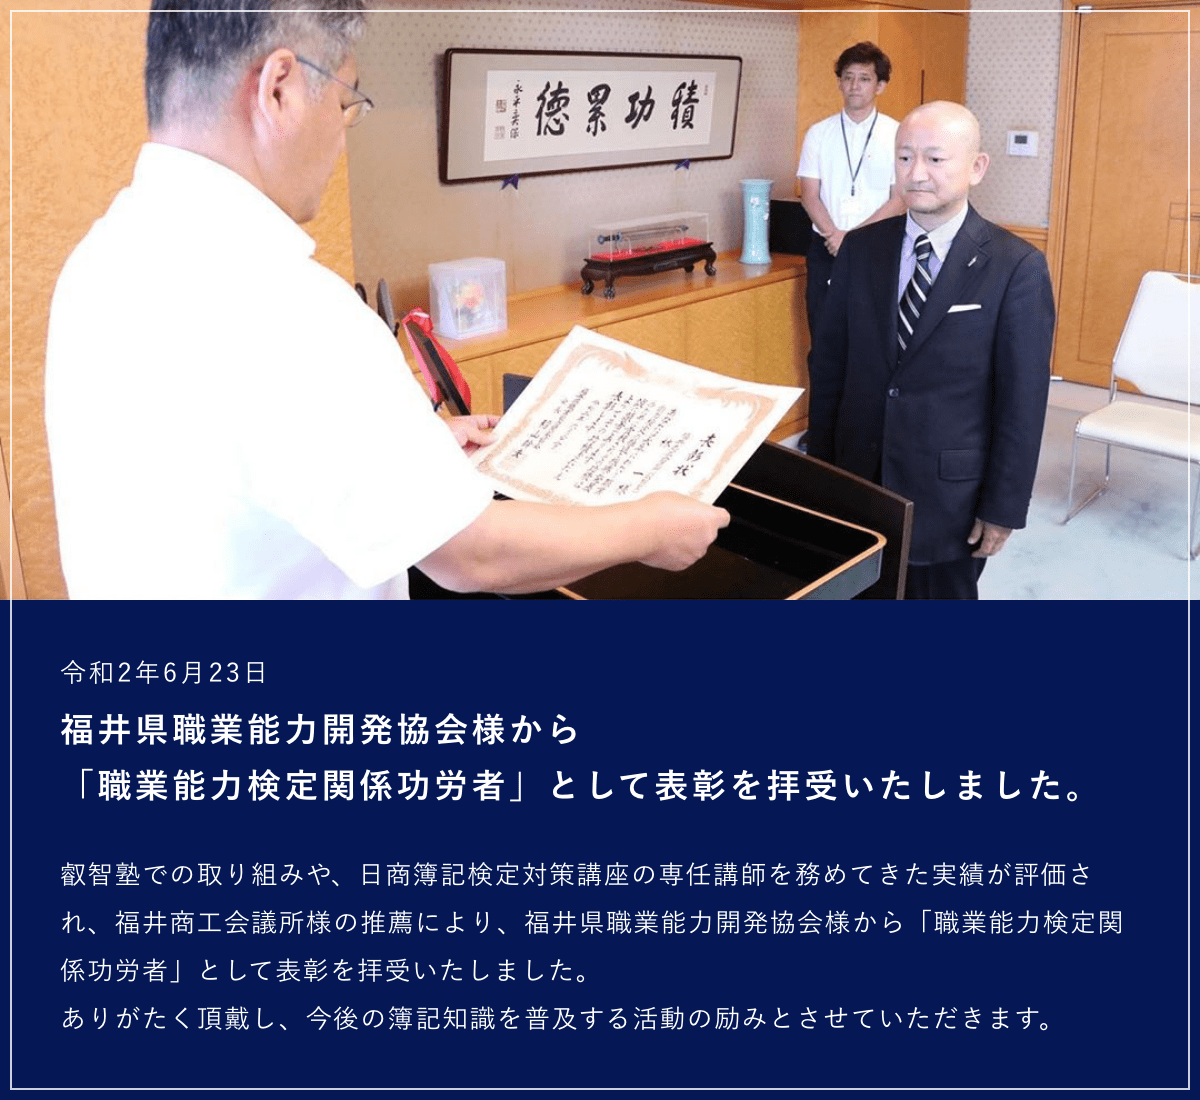 福井県職業能力開発協会様から「職業能力検定関係功労者」として表彰を拝受いたしました。